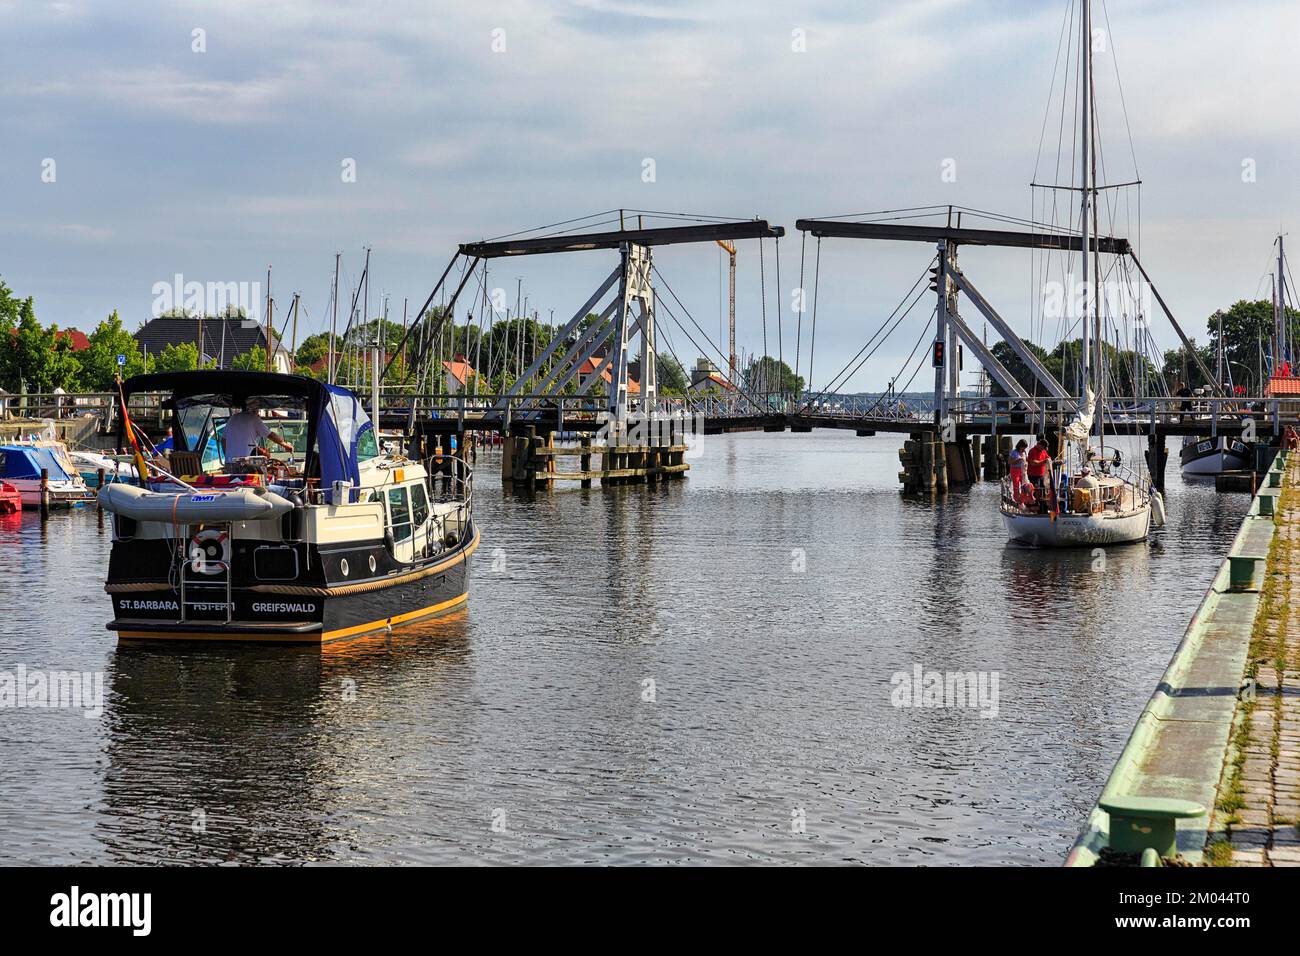 Boote mit Touristen, die vor der geschlossenen Zugbrücke warten, Doppelbalken, Wiecker Holzbaskulebrücke, Fluss Ryck, Greifswald, Deutschland, EU Stockfoto